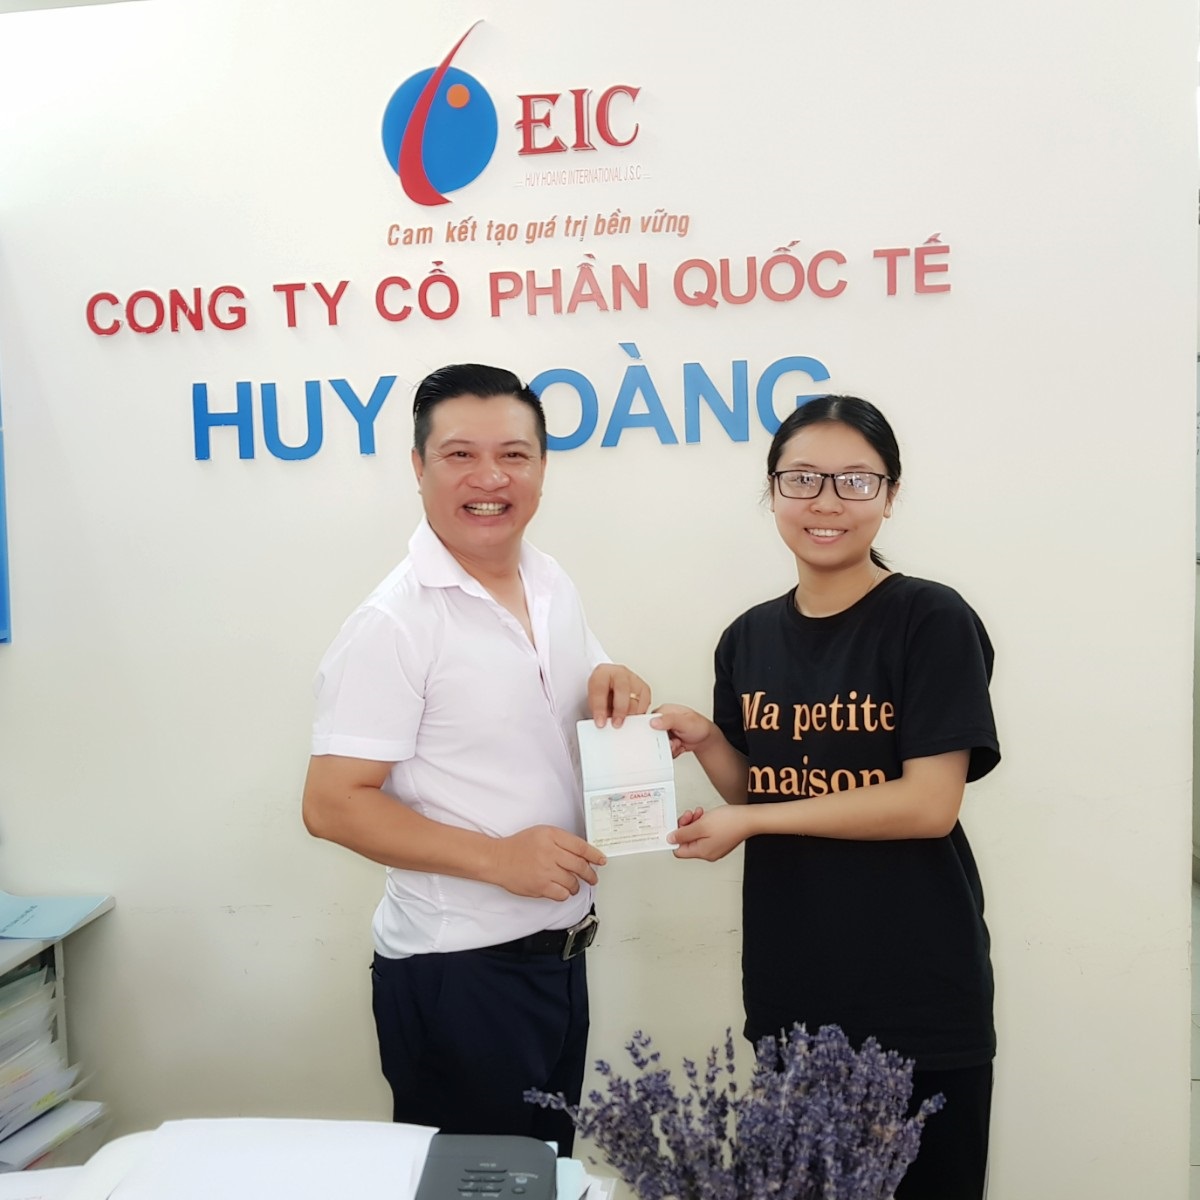 TGĐ trao visa Canada cho em Phạm Thị Diệu Linh